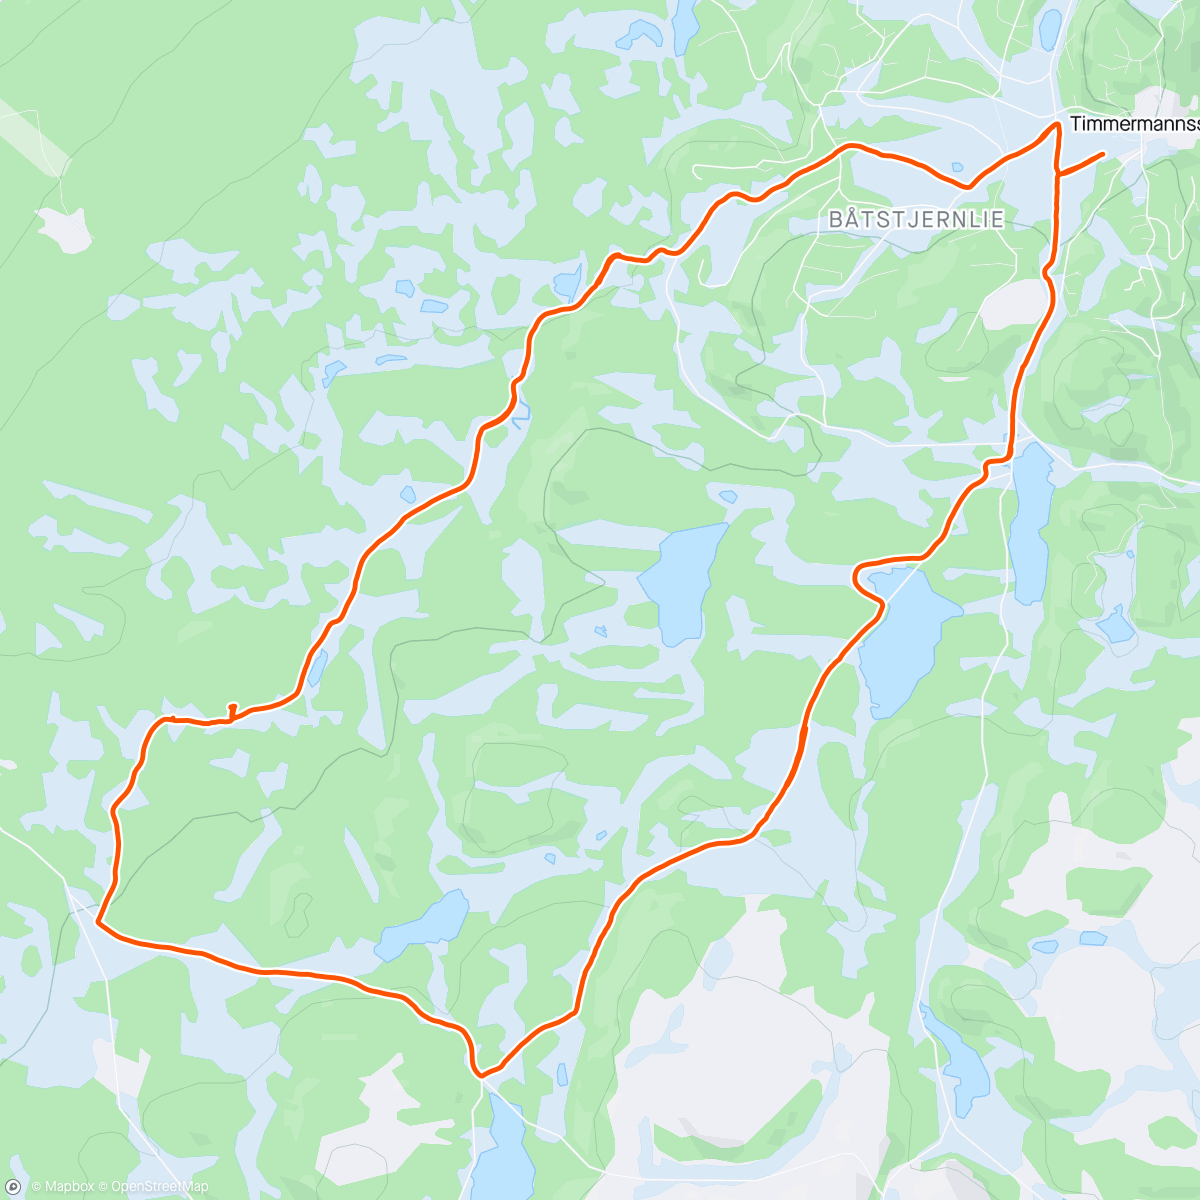 Carte de l'activité Afternoon Nordic Ski